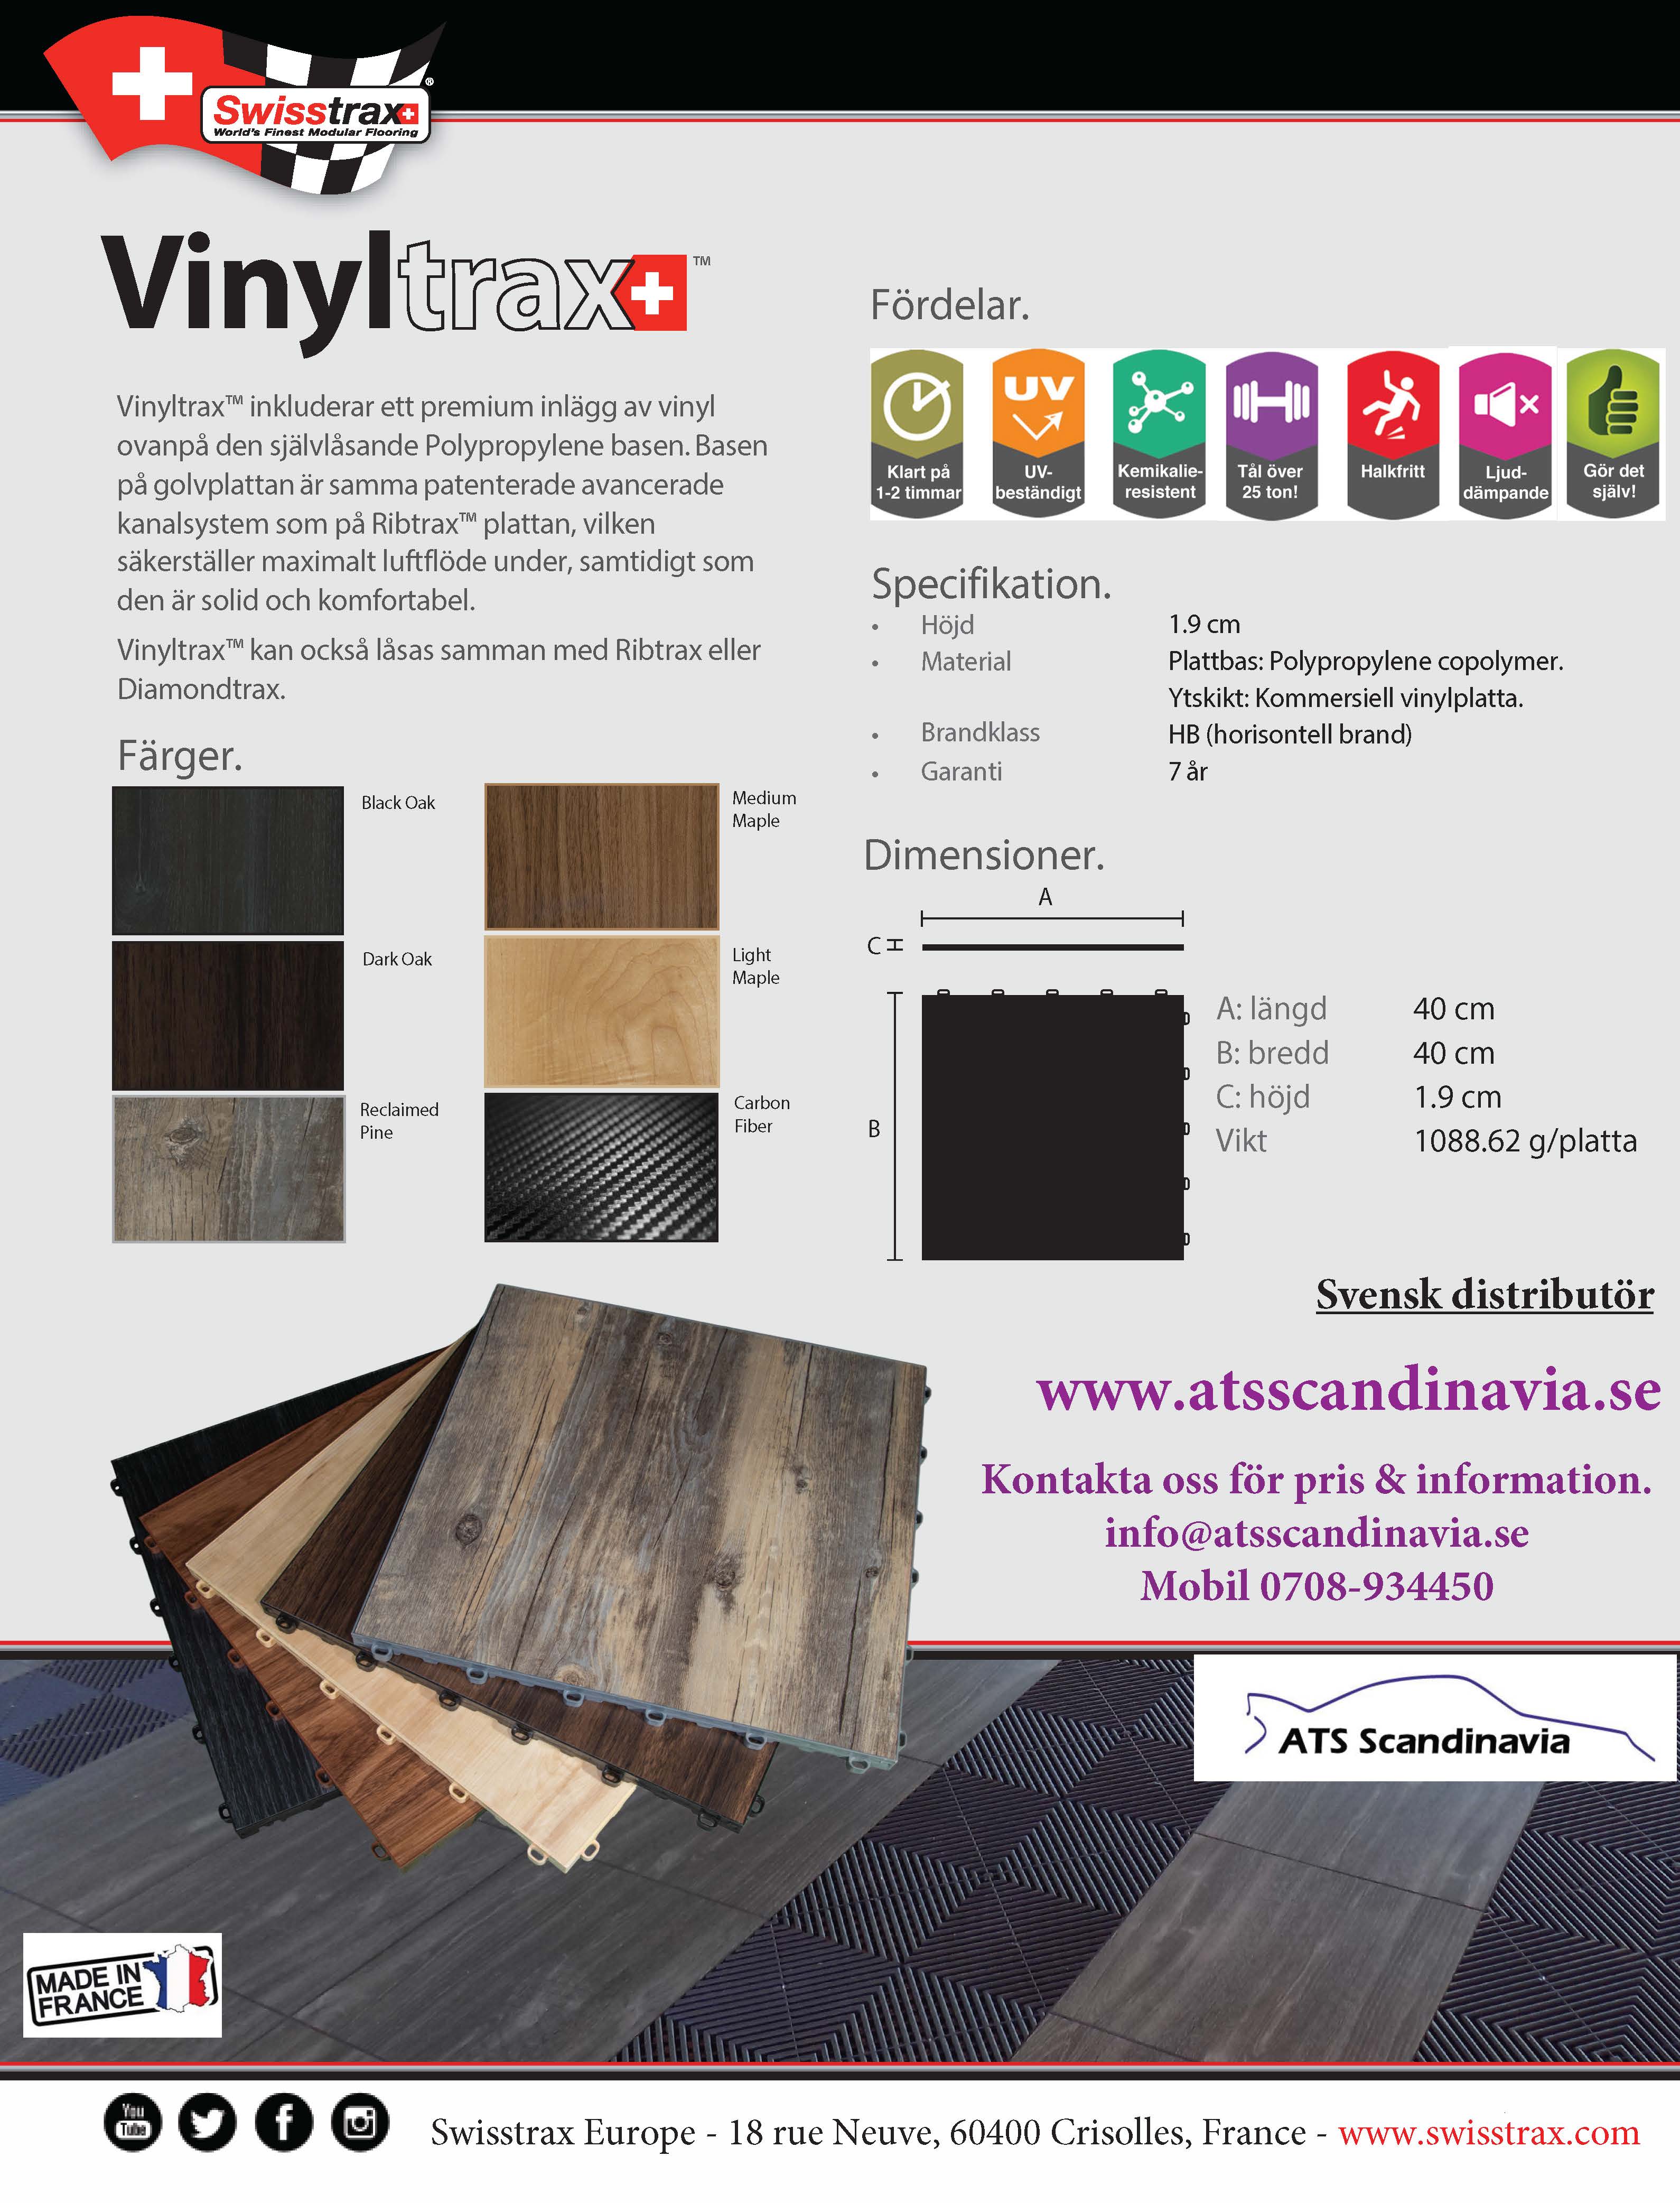 Sell Sheet - Vinyltrax Made in EU SVENSKA